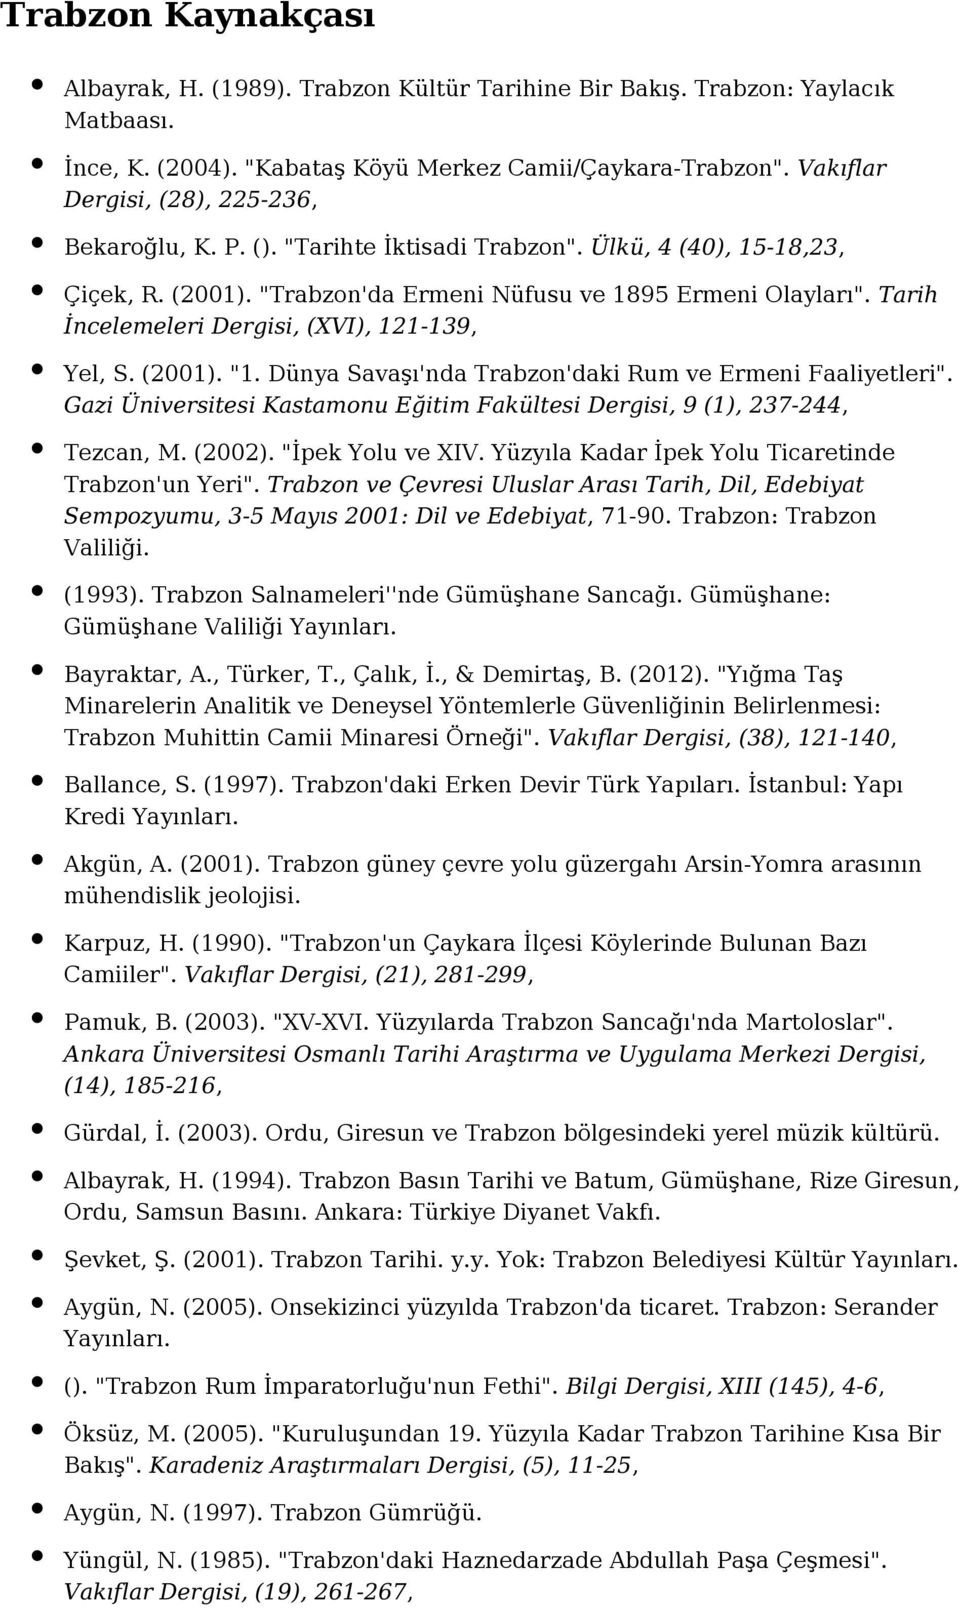 Tarih İncelemeleri Dergisi, (XVI), 121-139, Yel, S. (2001). "1. Dünya Savaşı'nda Trabzon'daki Rum ve Ermeni Faaliyetleri".